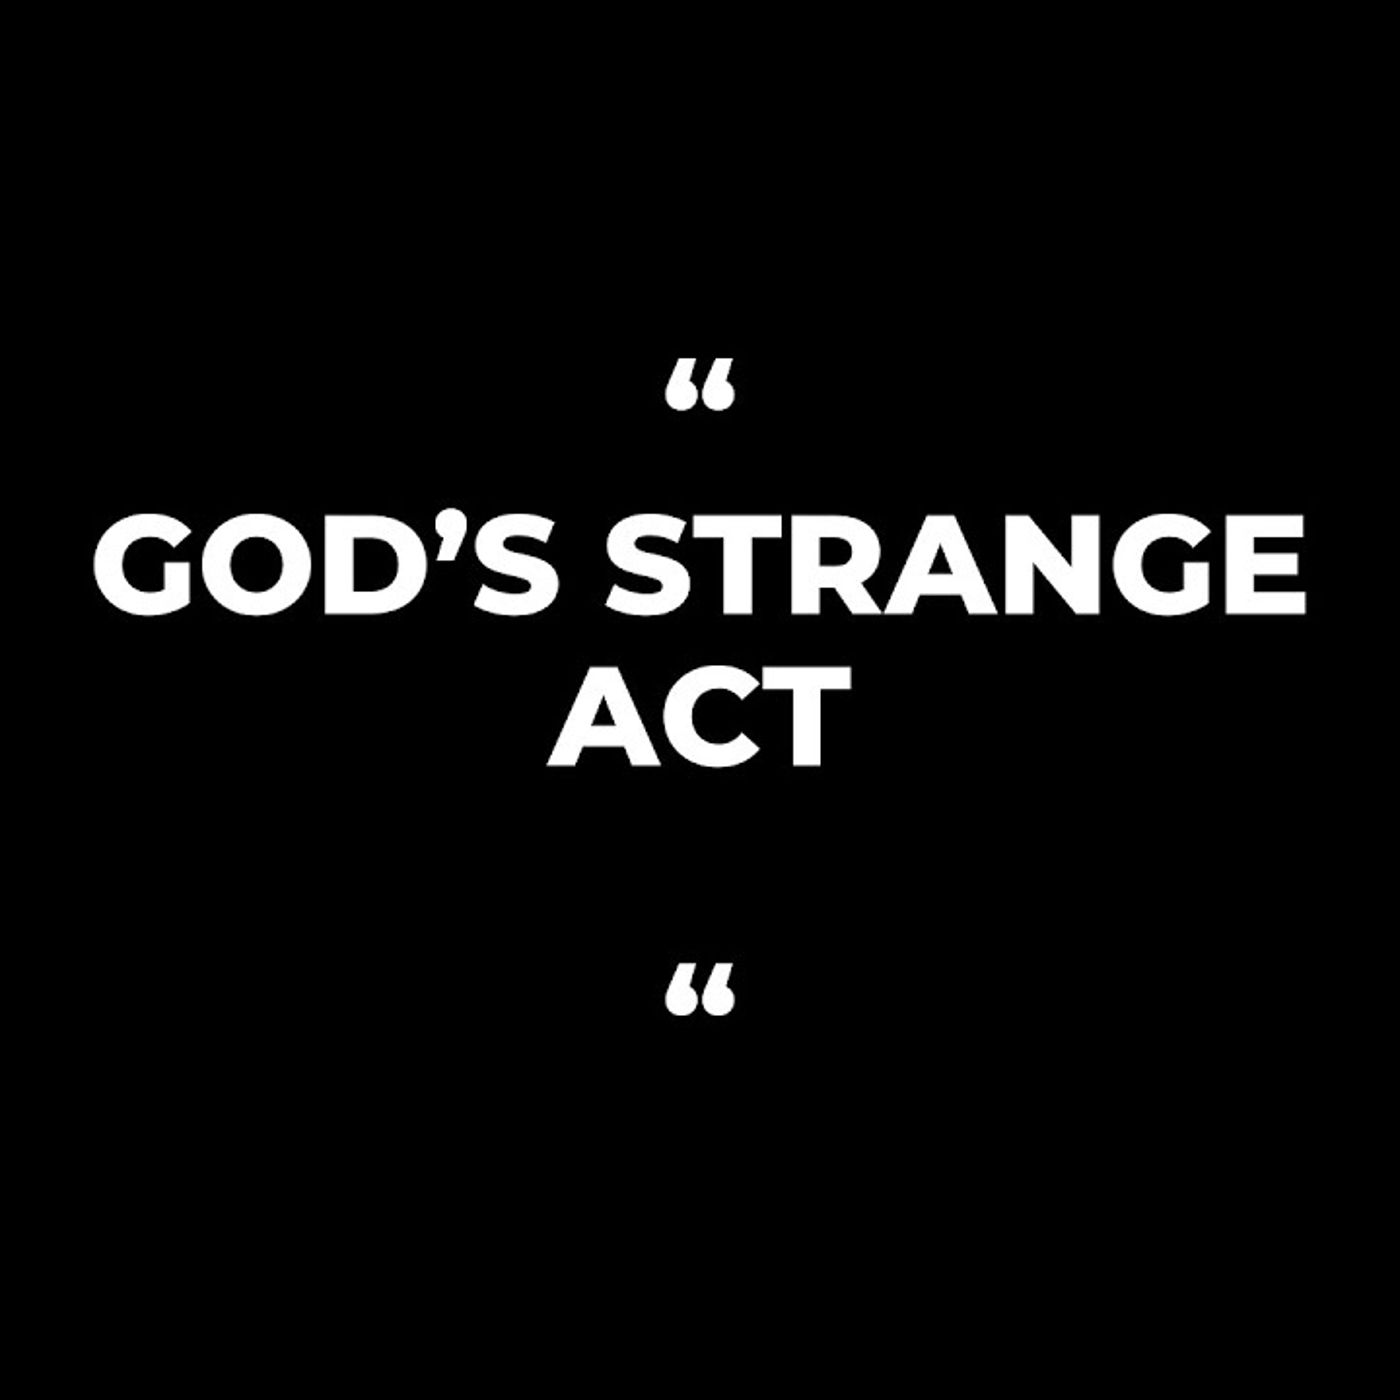 Ep. 21 God's Strange Work/Act Isa 28:21-22